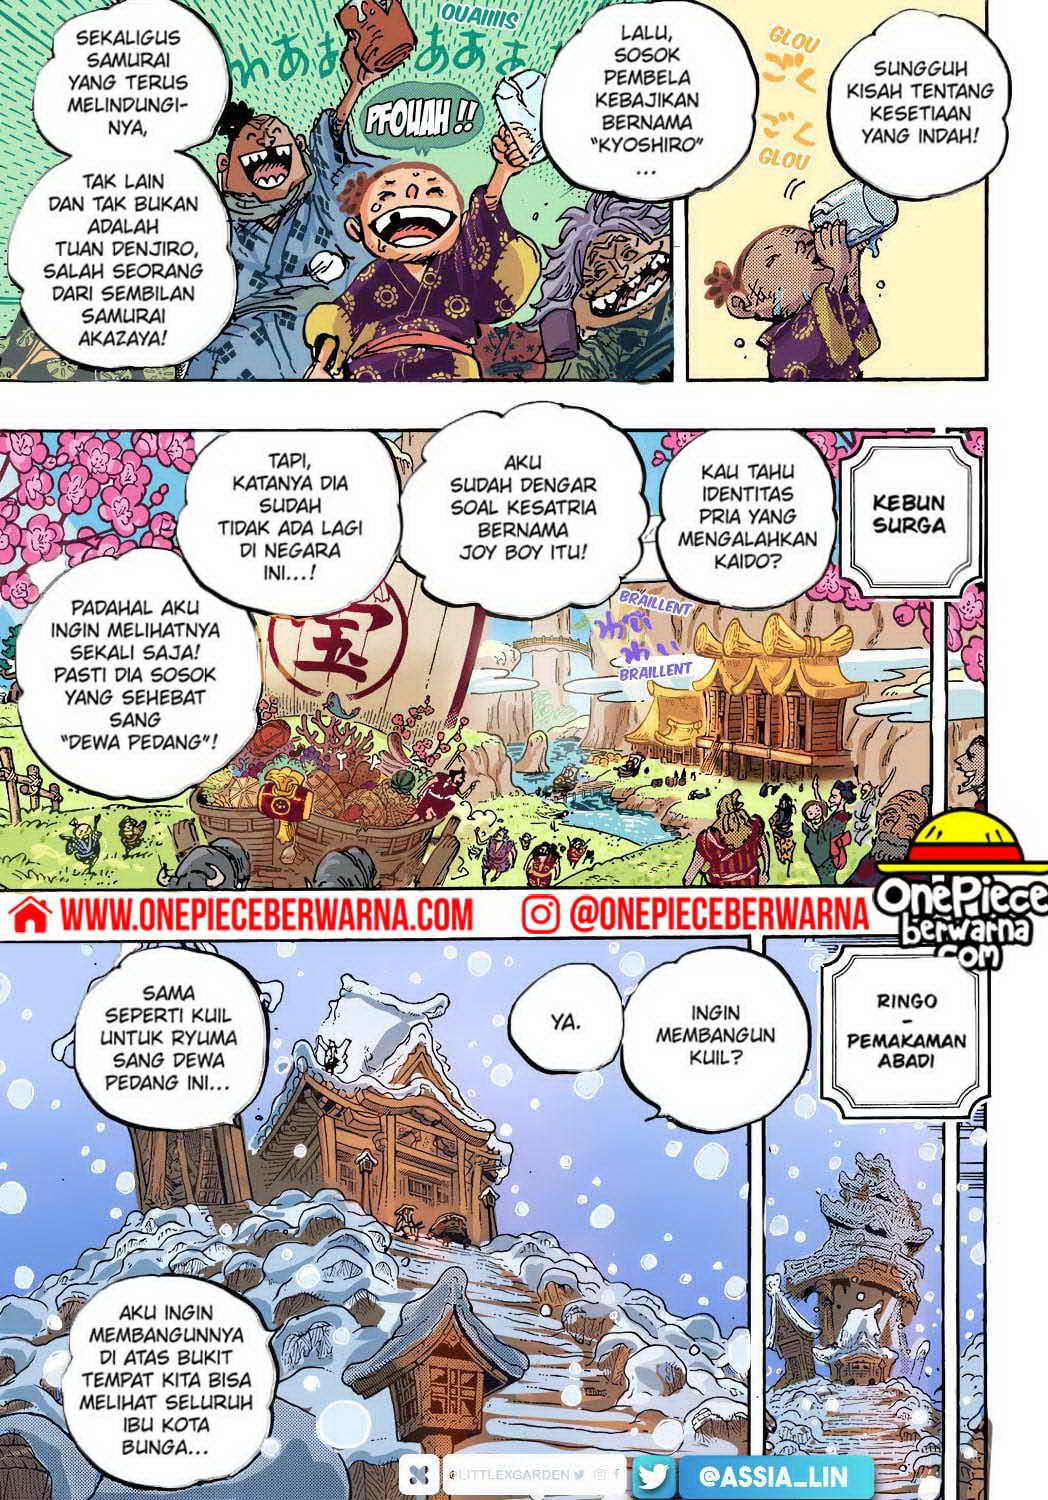 One Piece Berwarna Chapter 1052